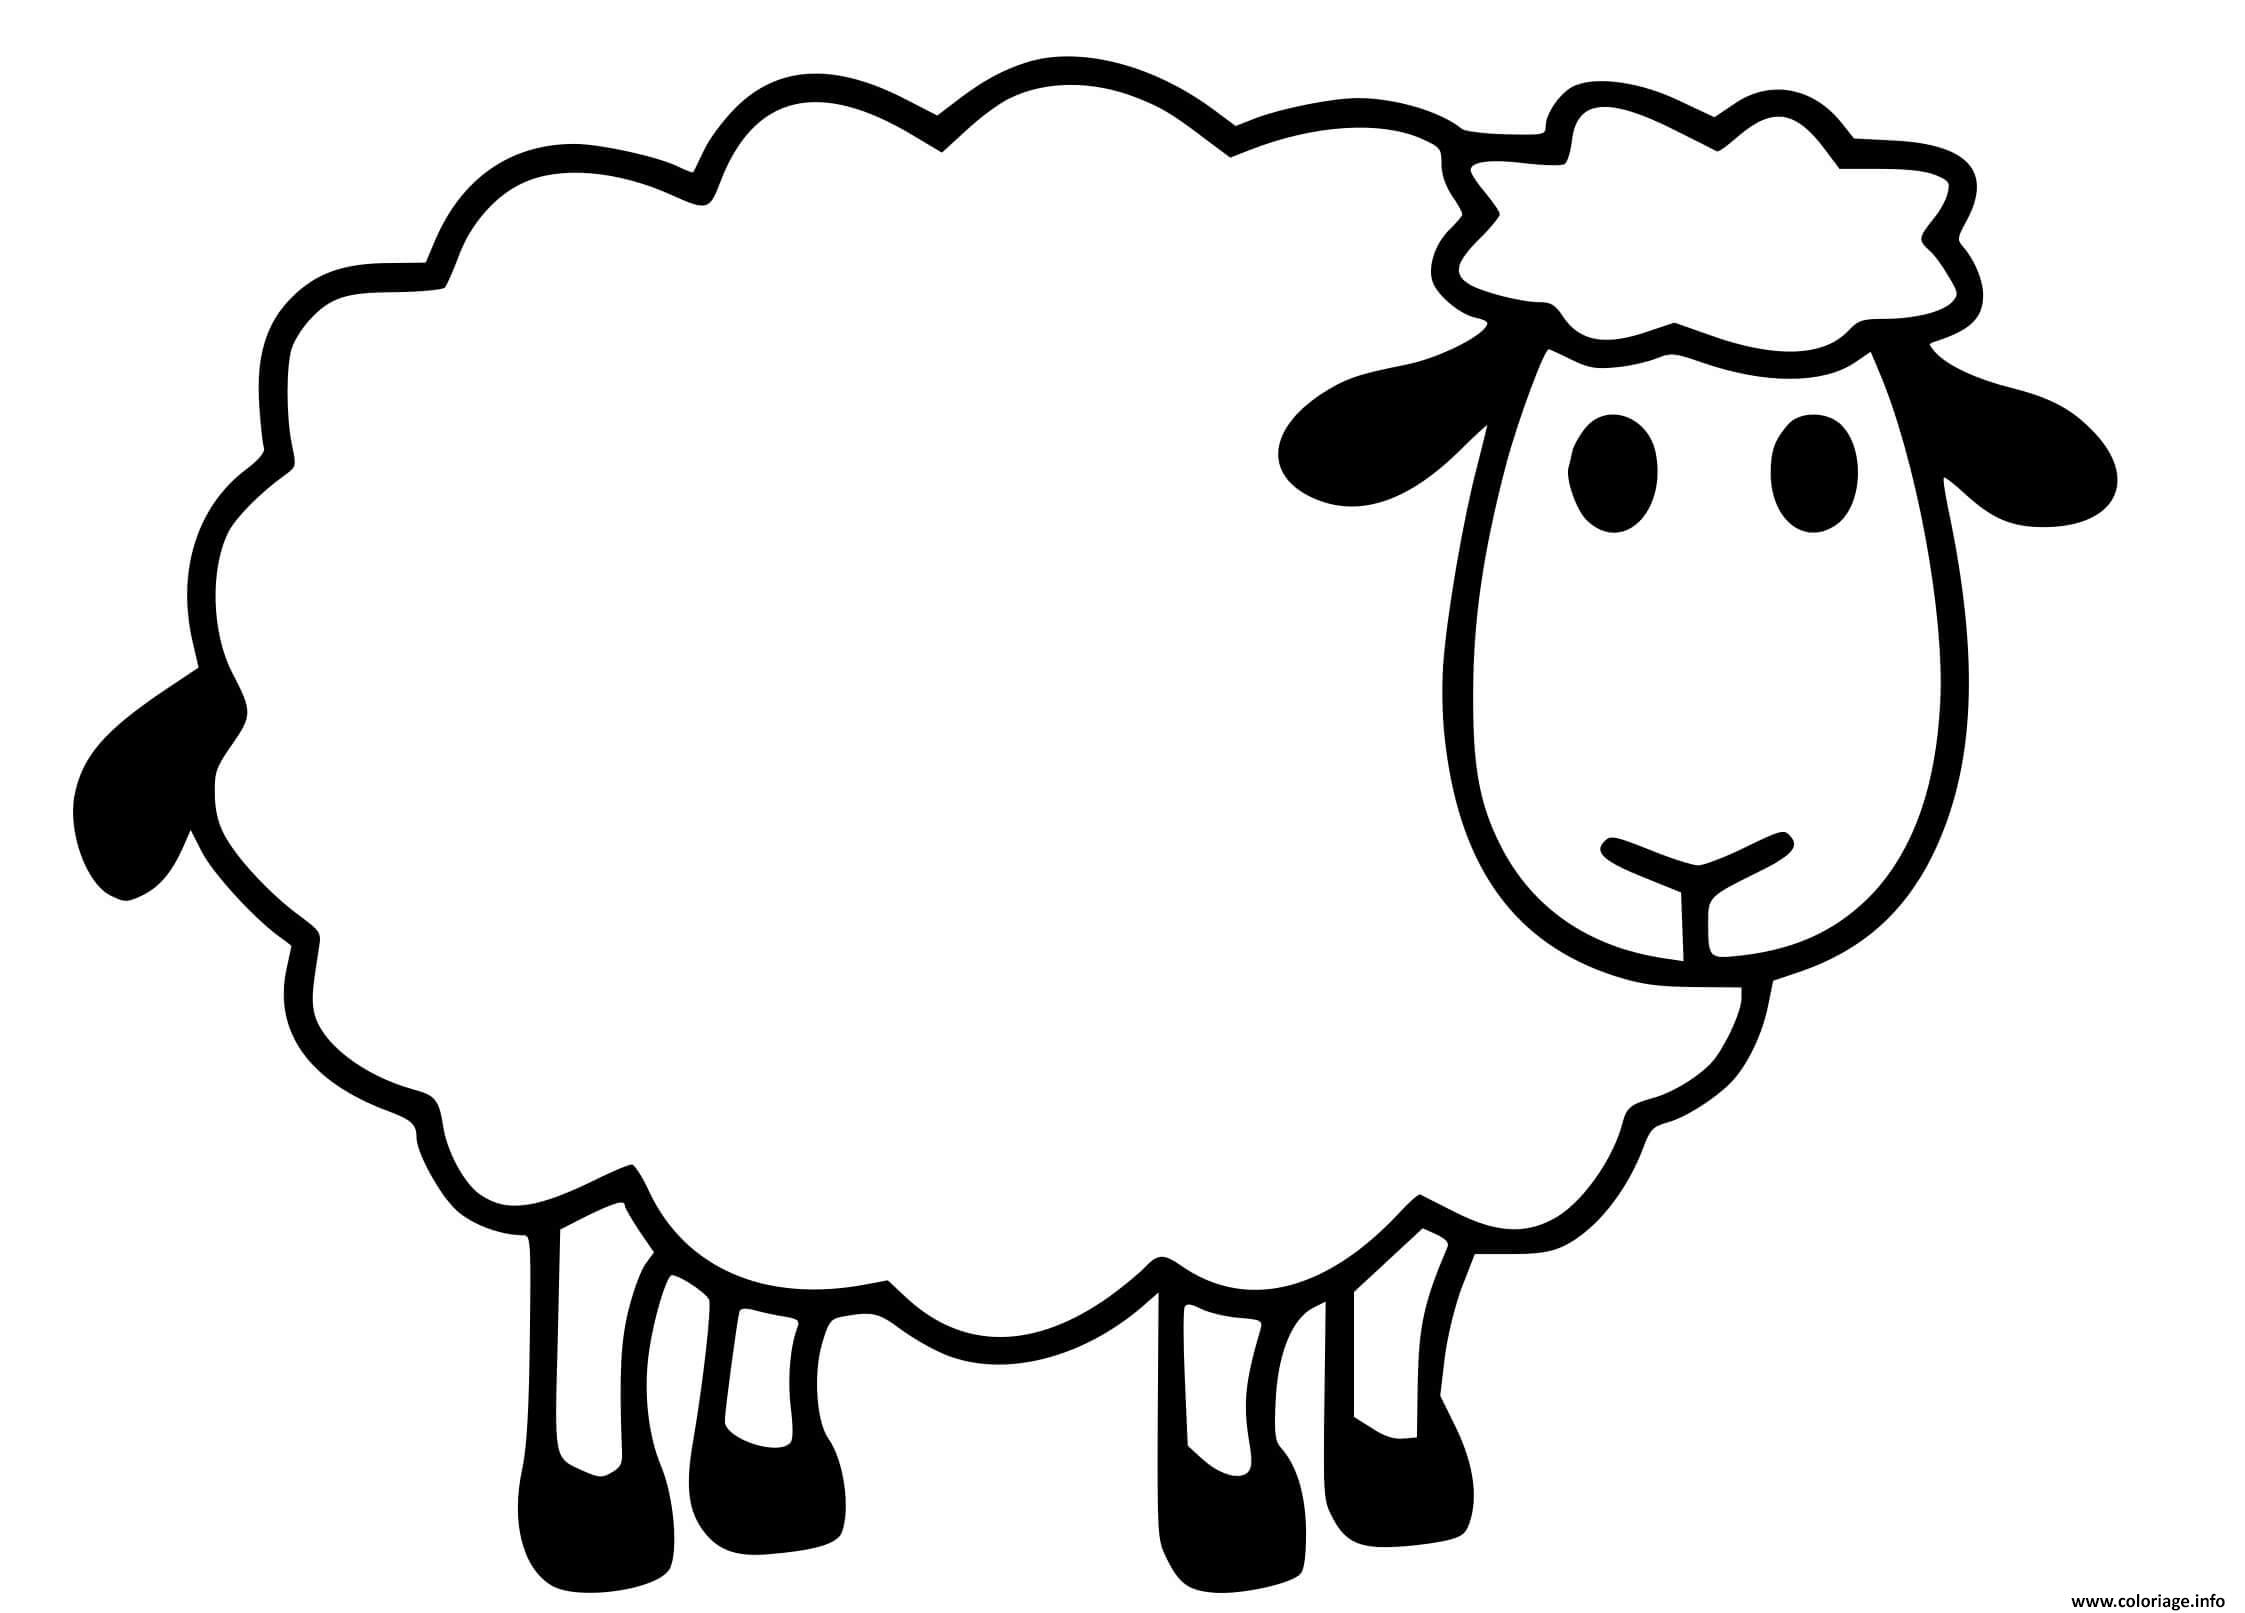 Dessin mouton facile maternelle Coloriage Gratuit à Imprimer